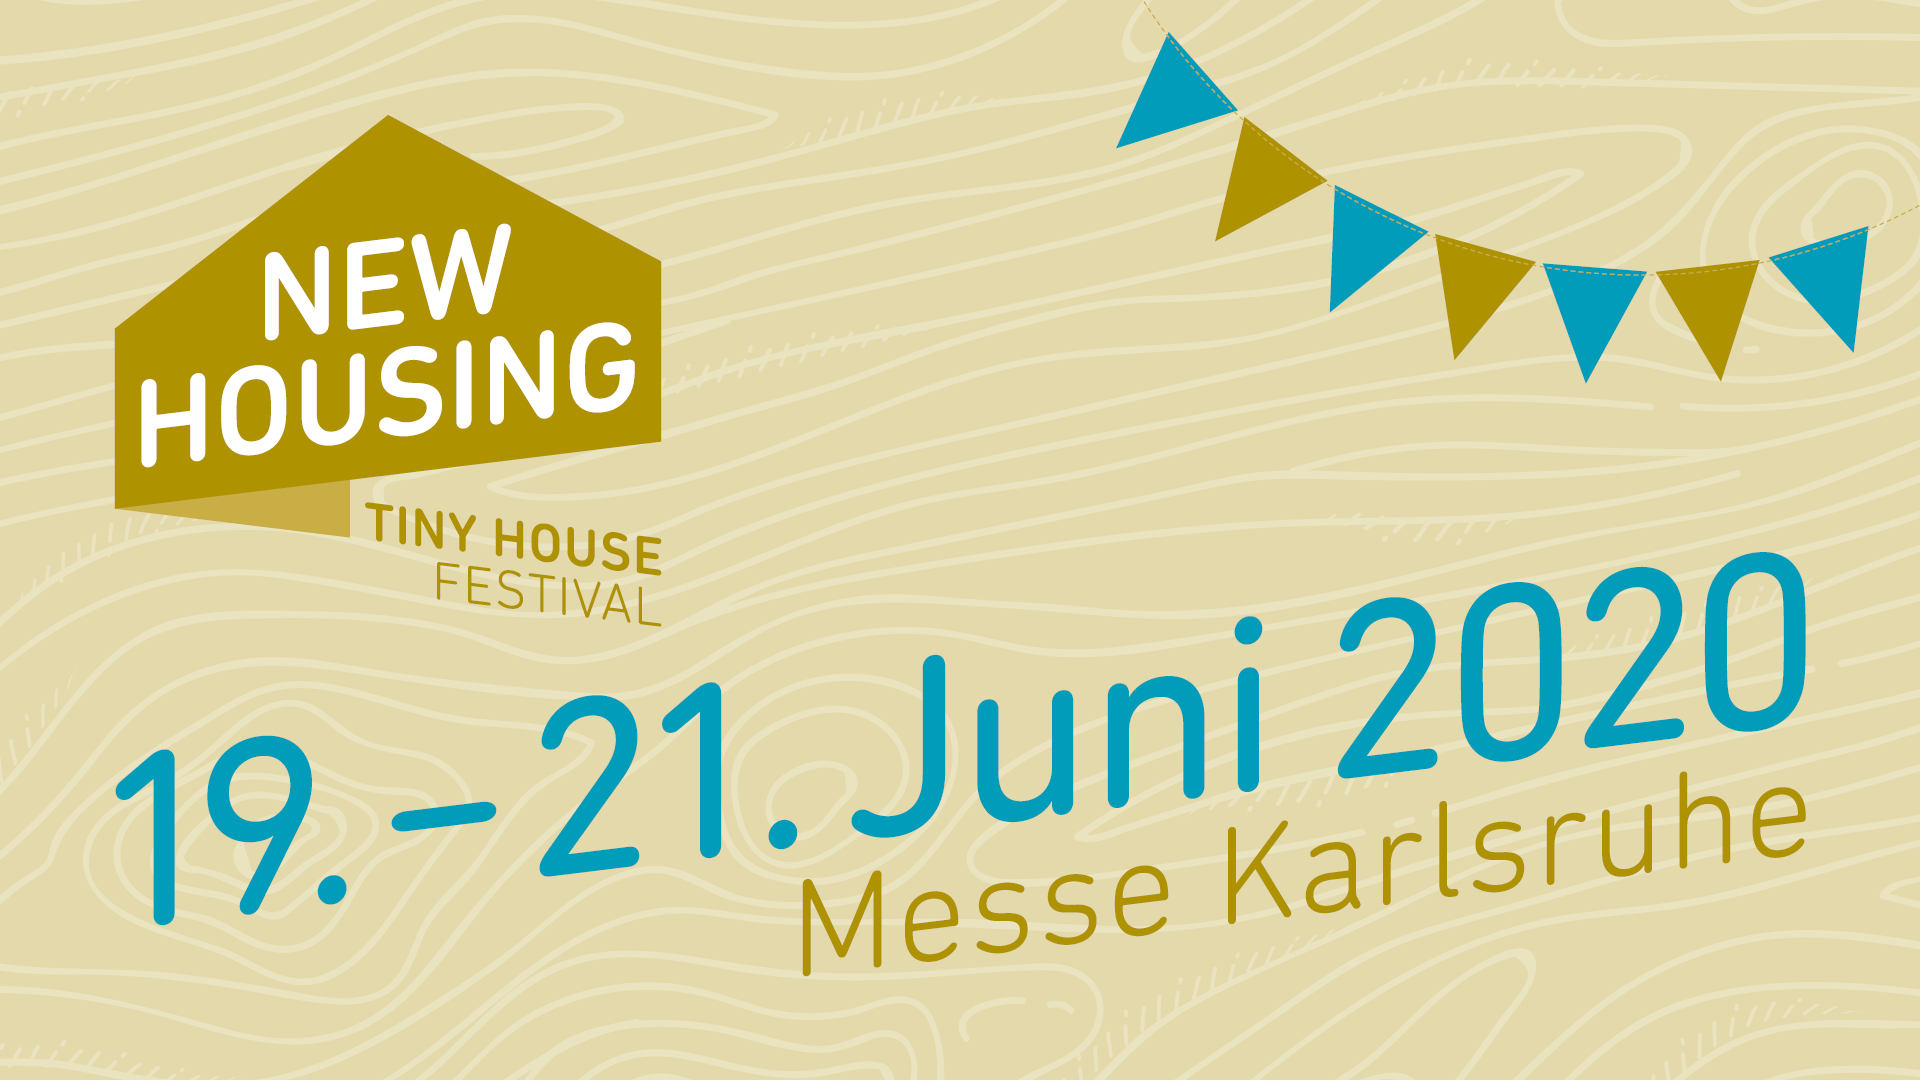 New Housing Messe Karlsruhe